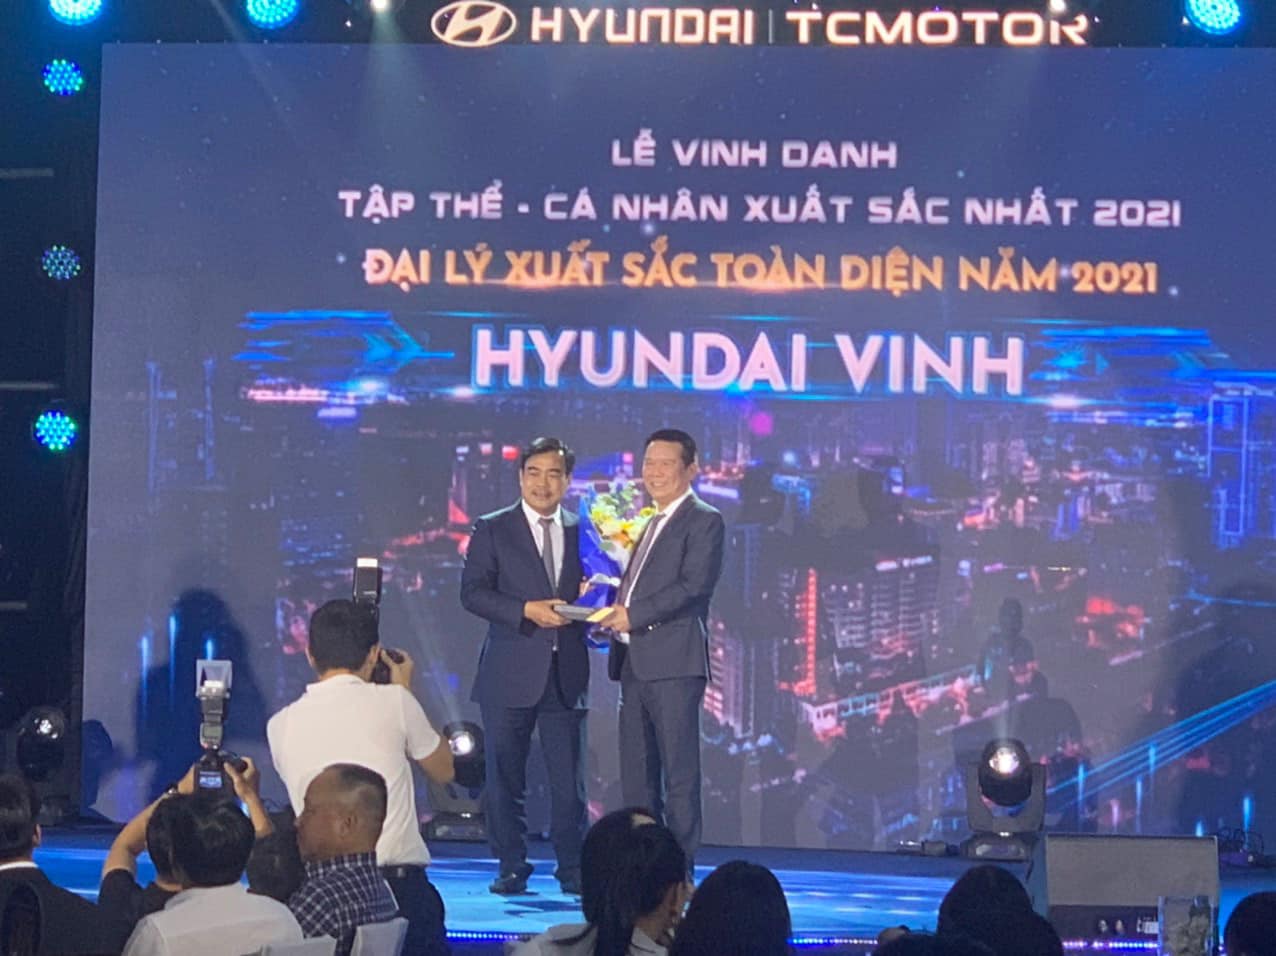 Hyundai Vinh đạt danh hiệu đại lý xuất sắc toàn diện năm 2021